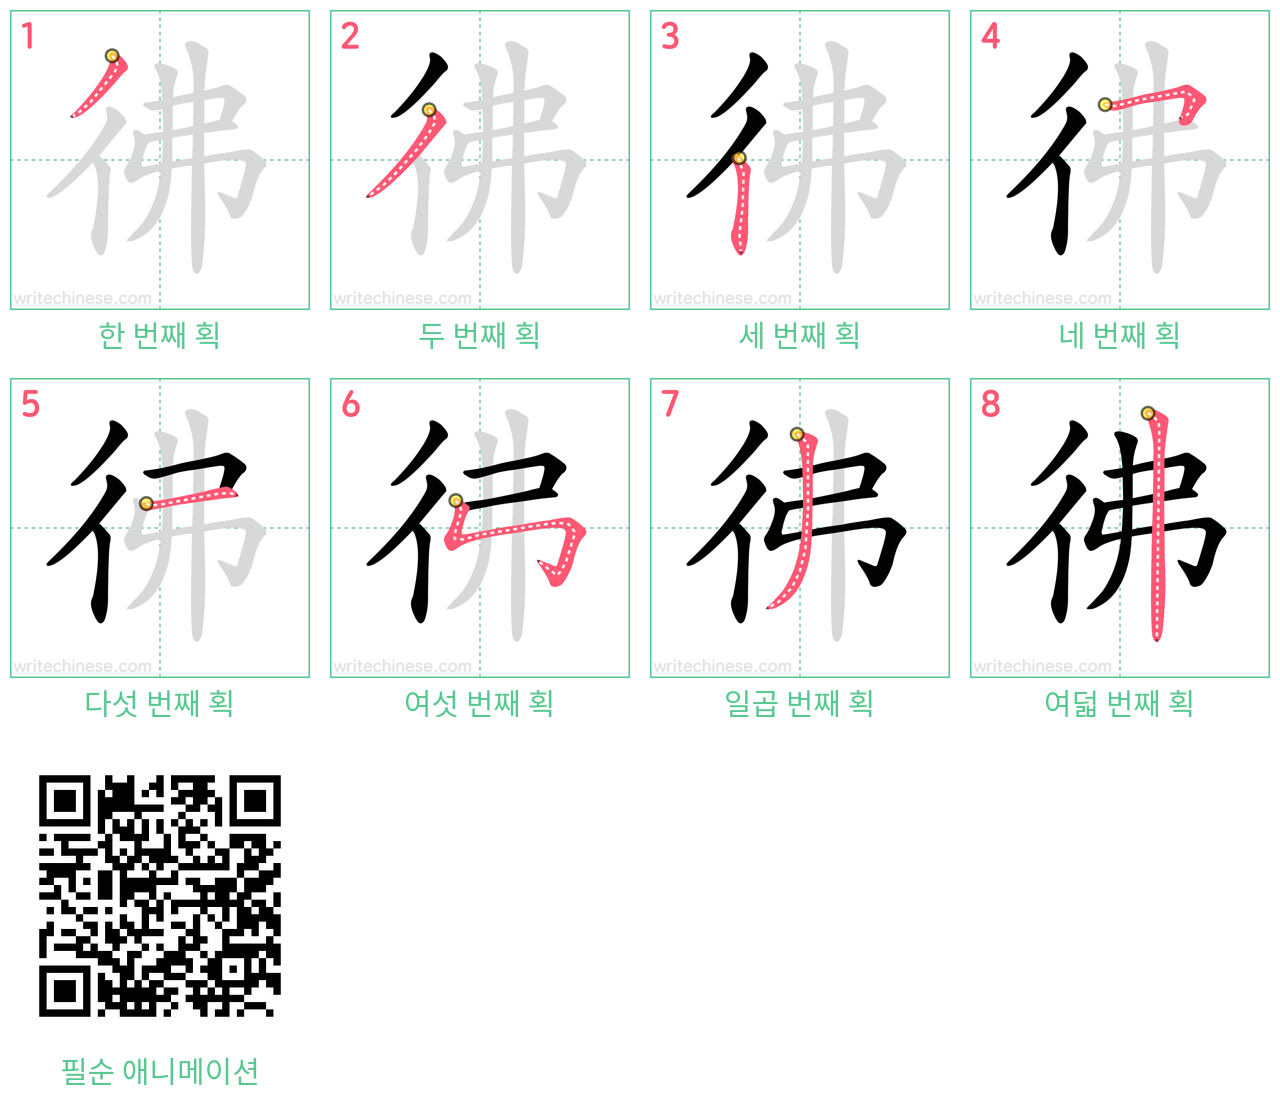 彿 step-by-step stroke order diagrams